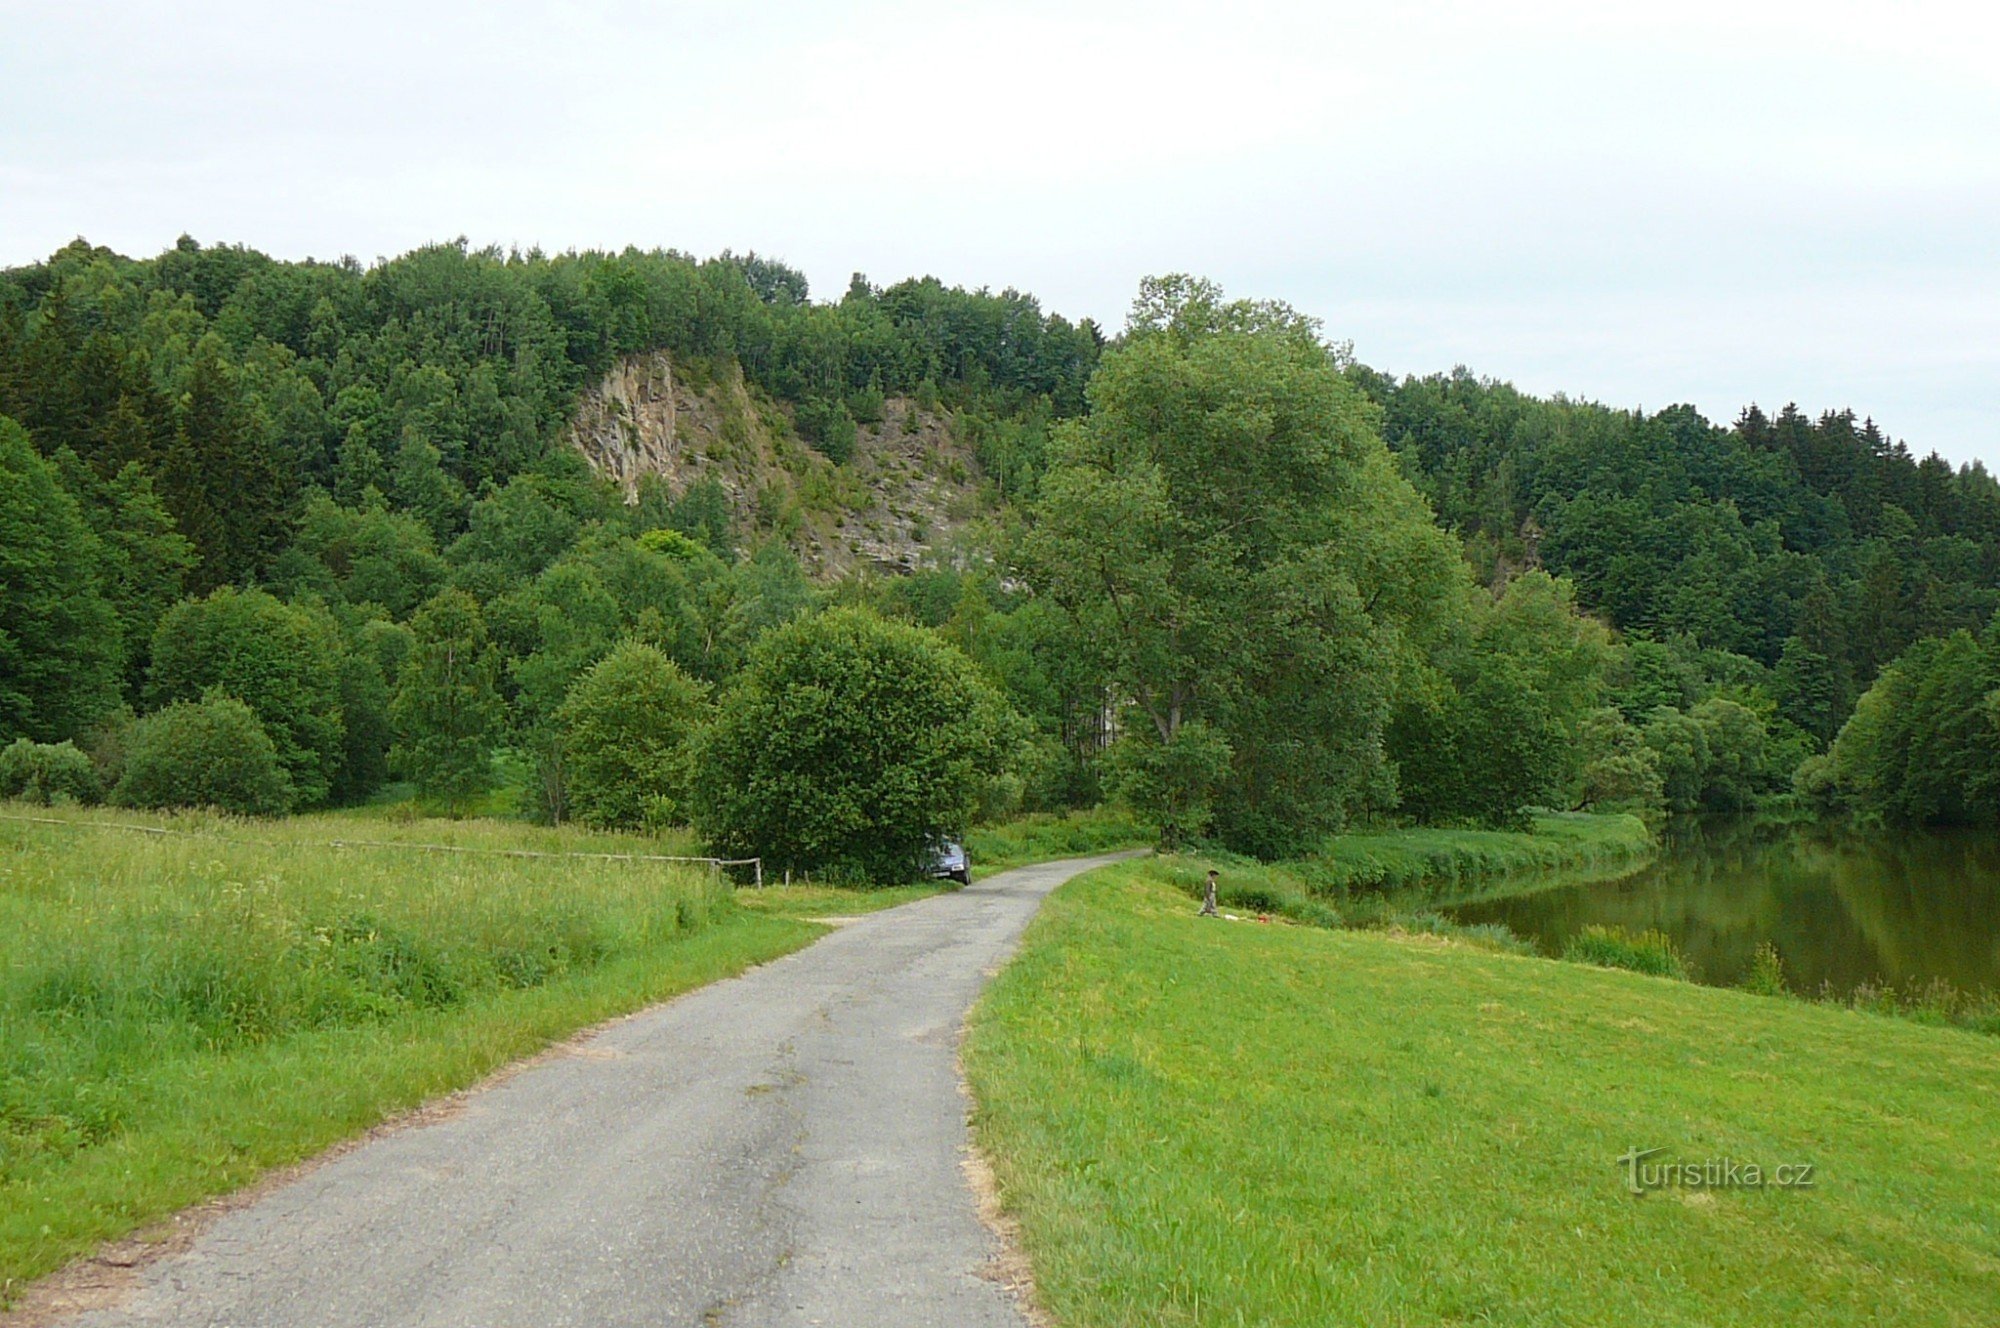 十字路口以附近的 Sázava 河采石场命名